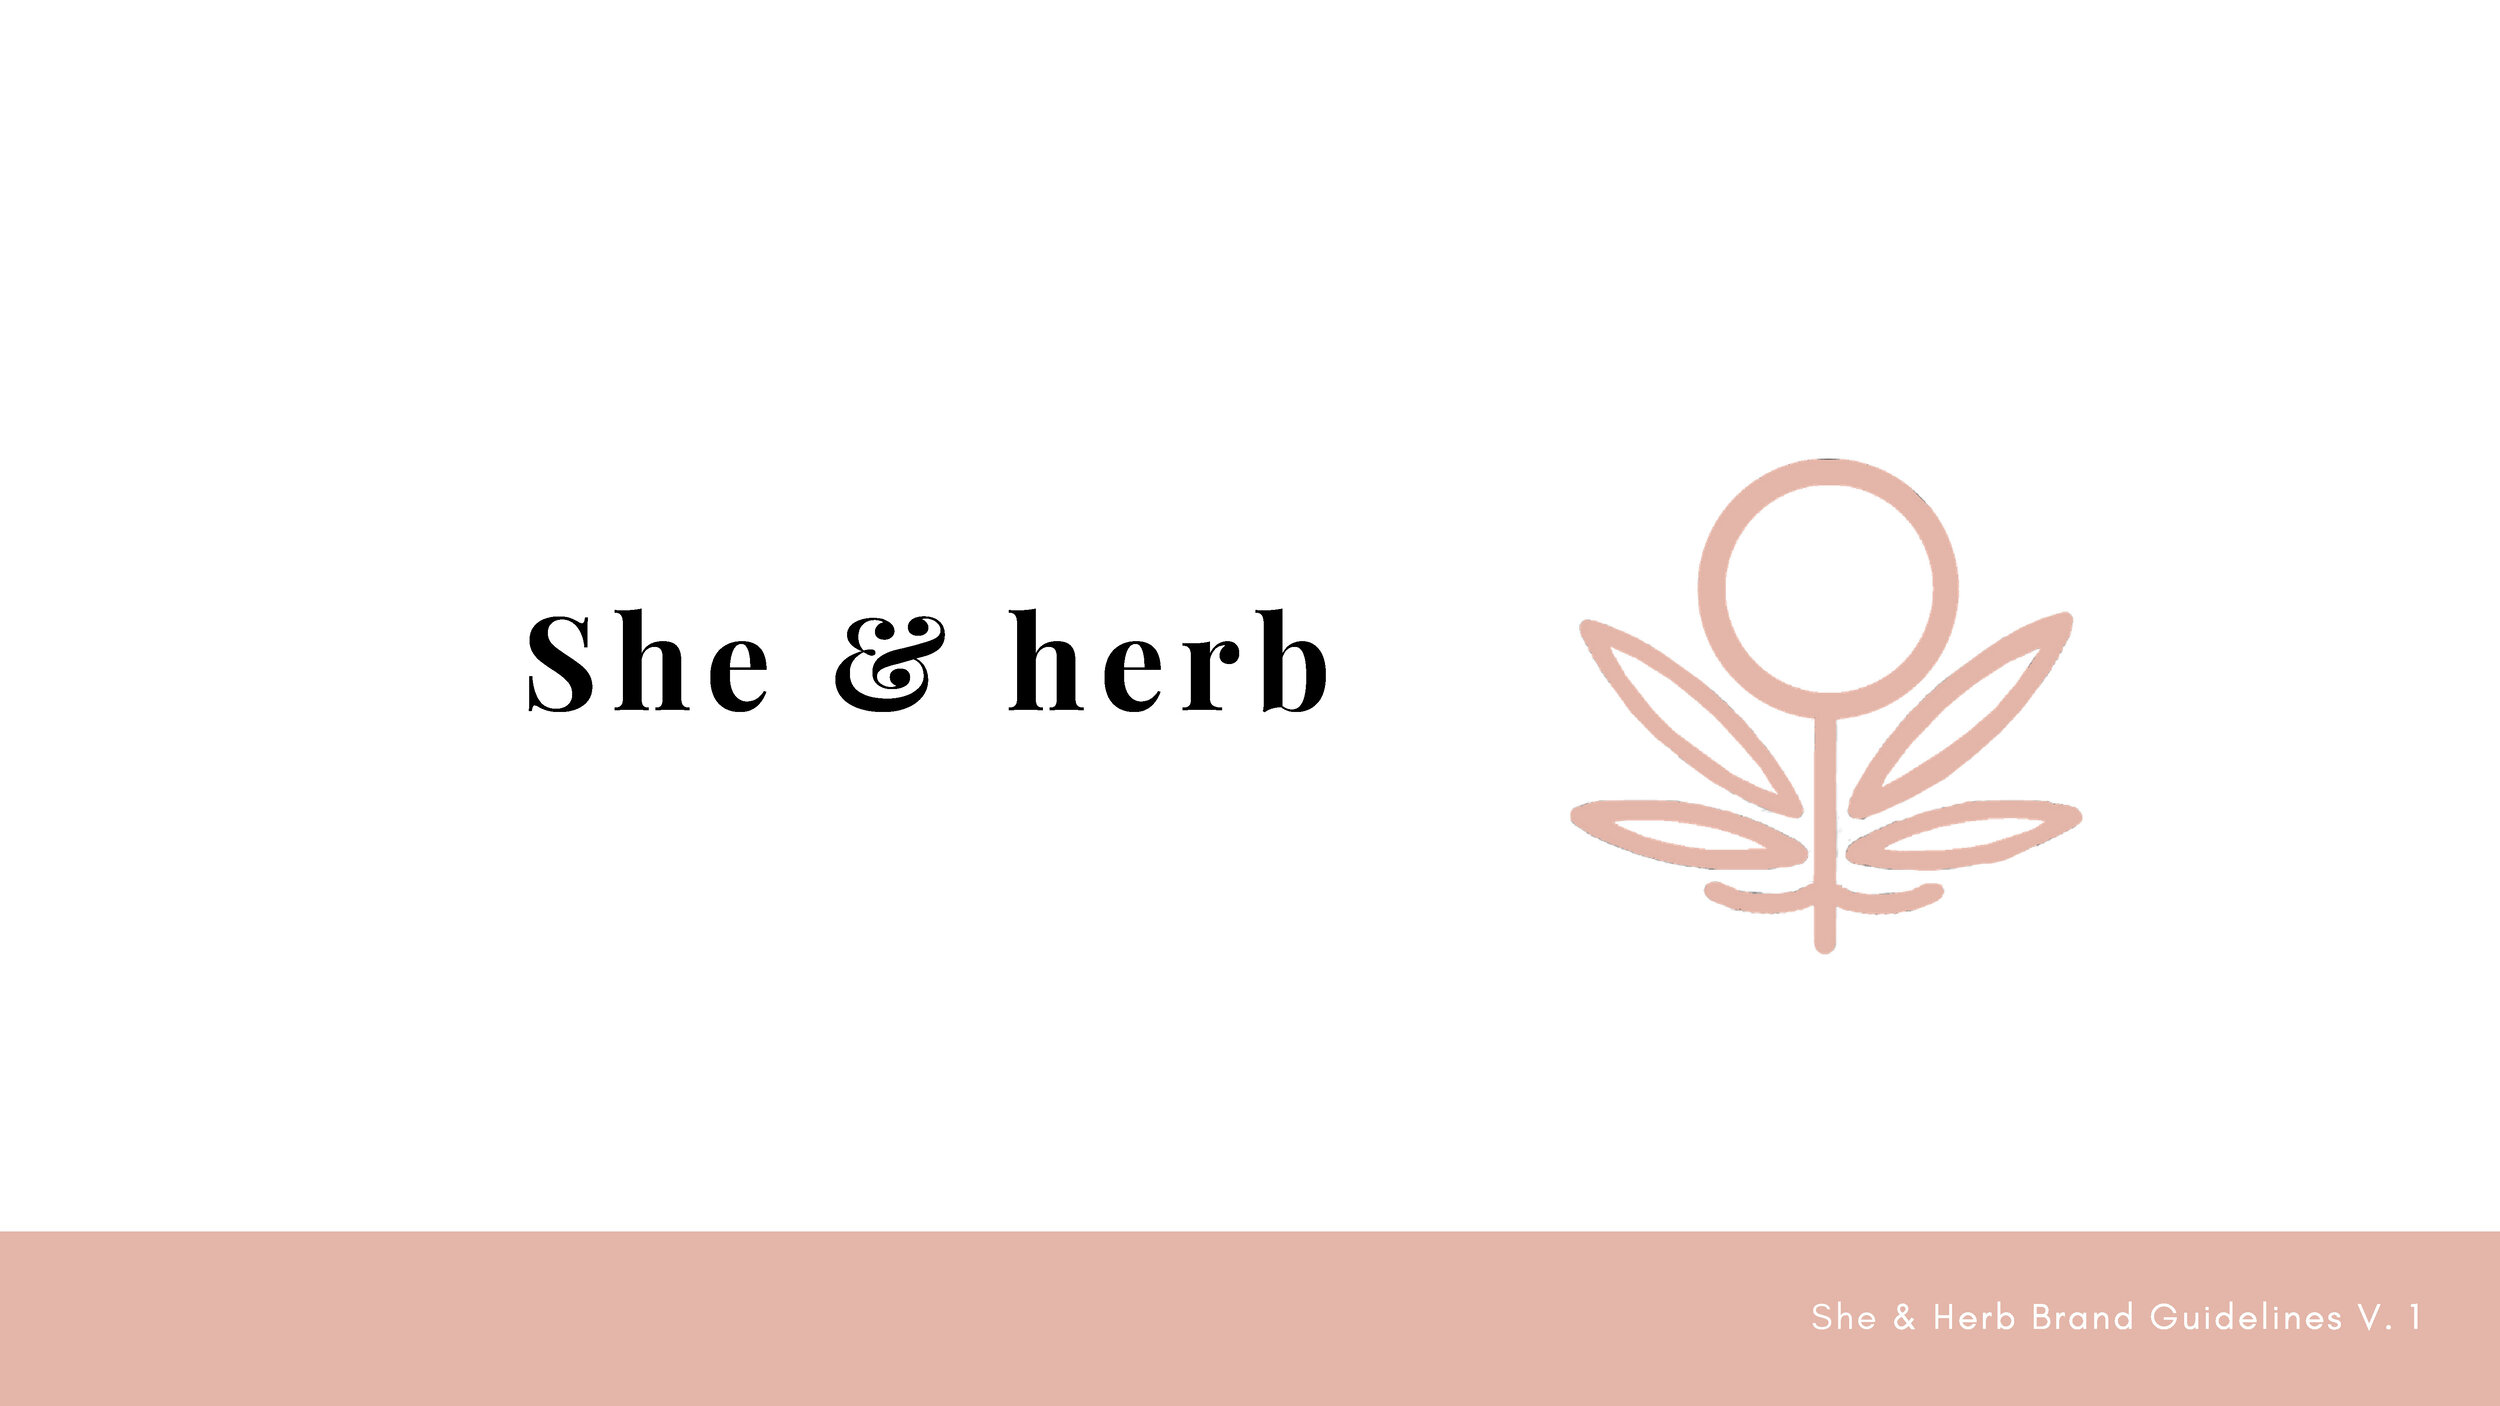 She & herb Brand Guidelines-13.jpg